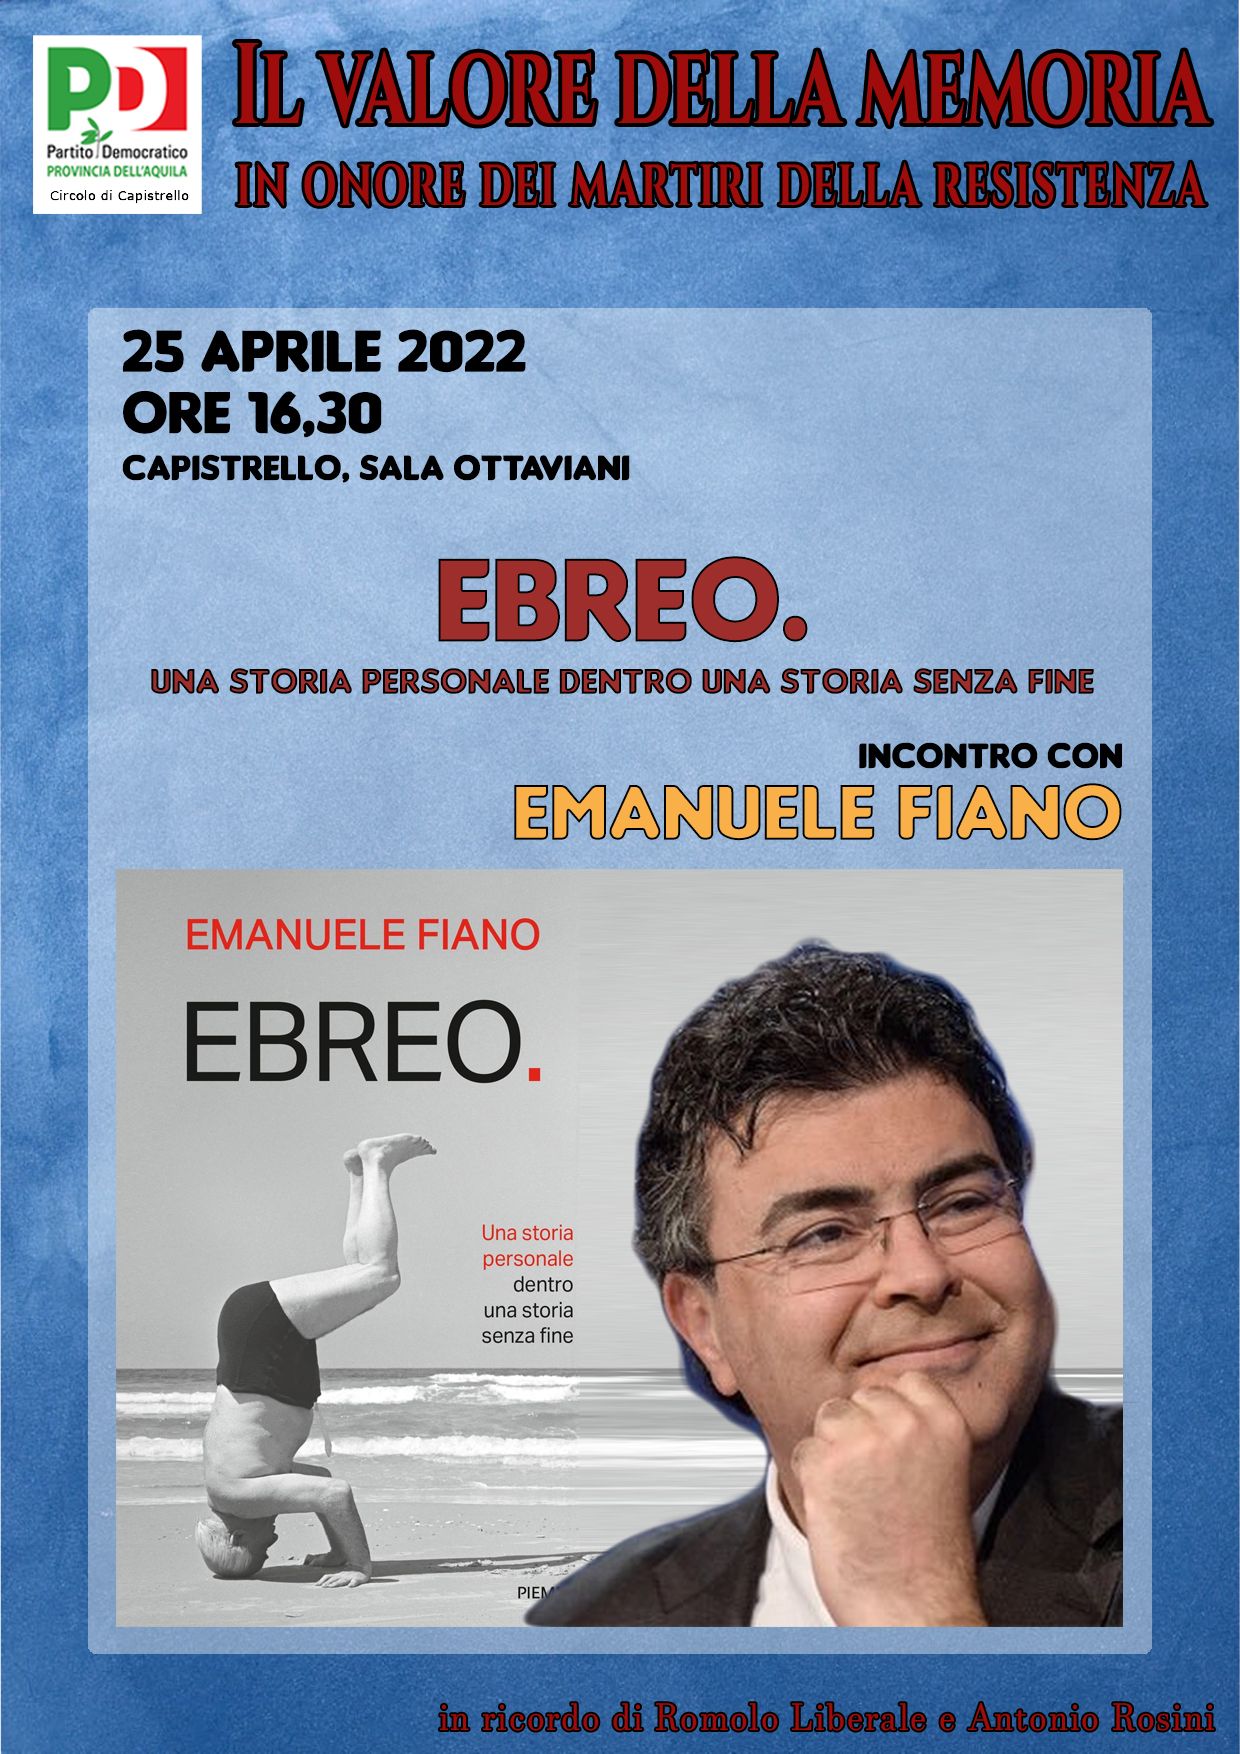 Il valore della memoria: il 25 aprile a Capistrello incontro con Emanuele Fiano